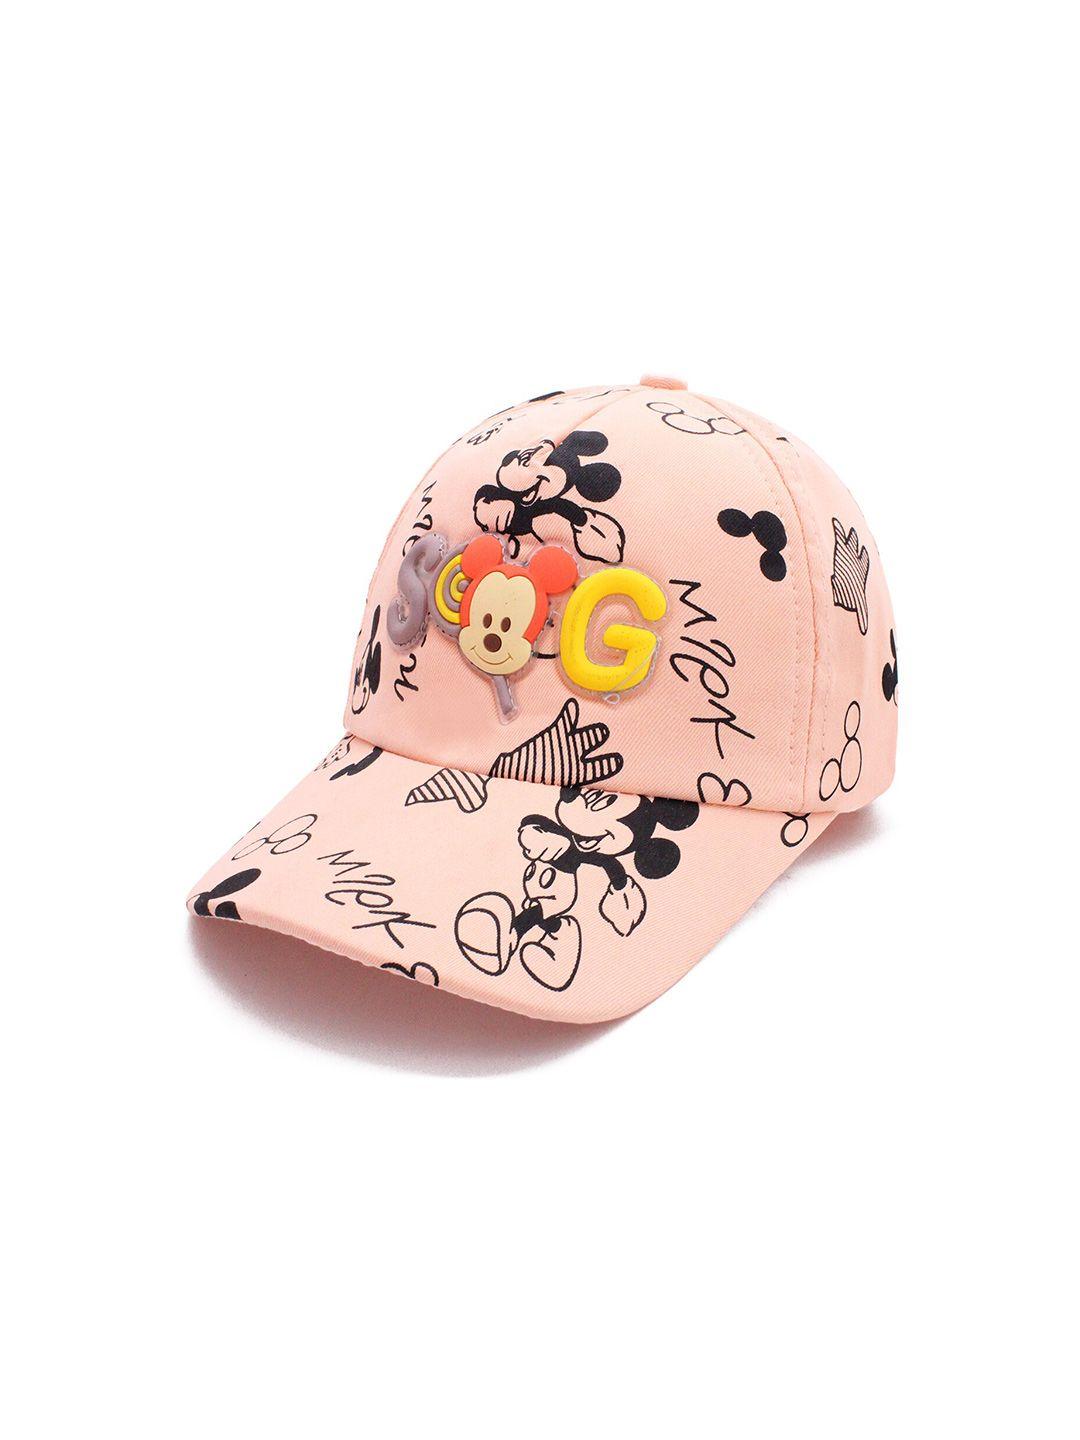 jenna kids pink & black printed baseball cap